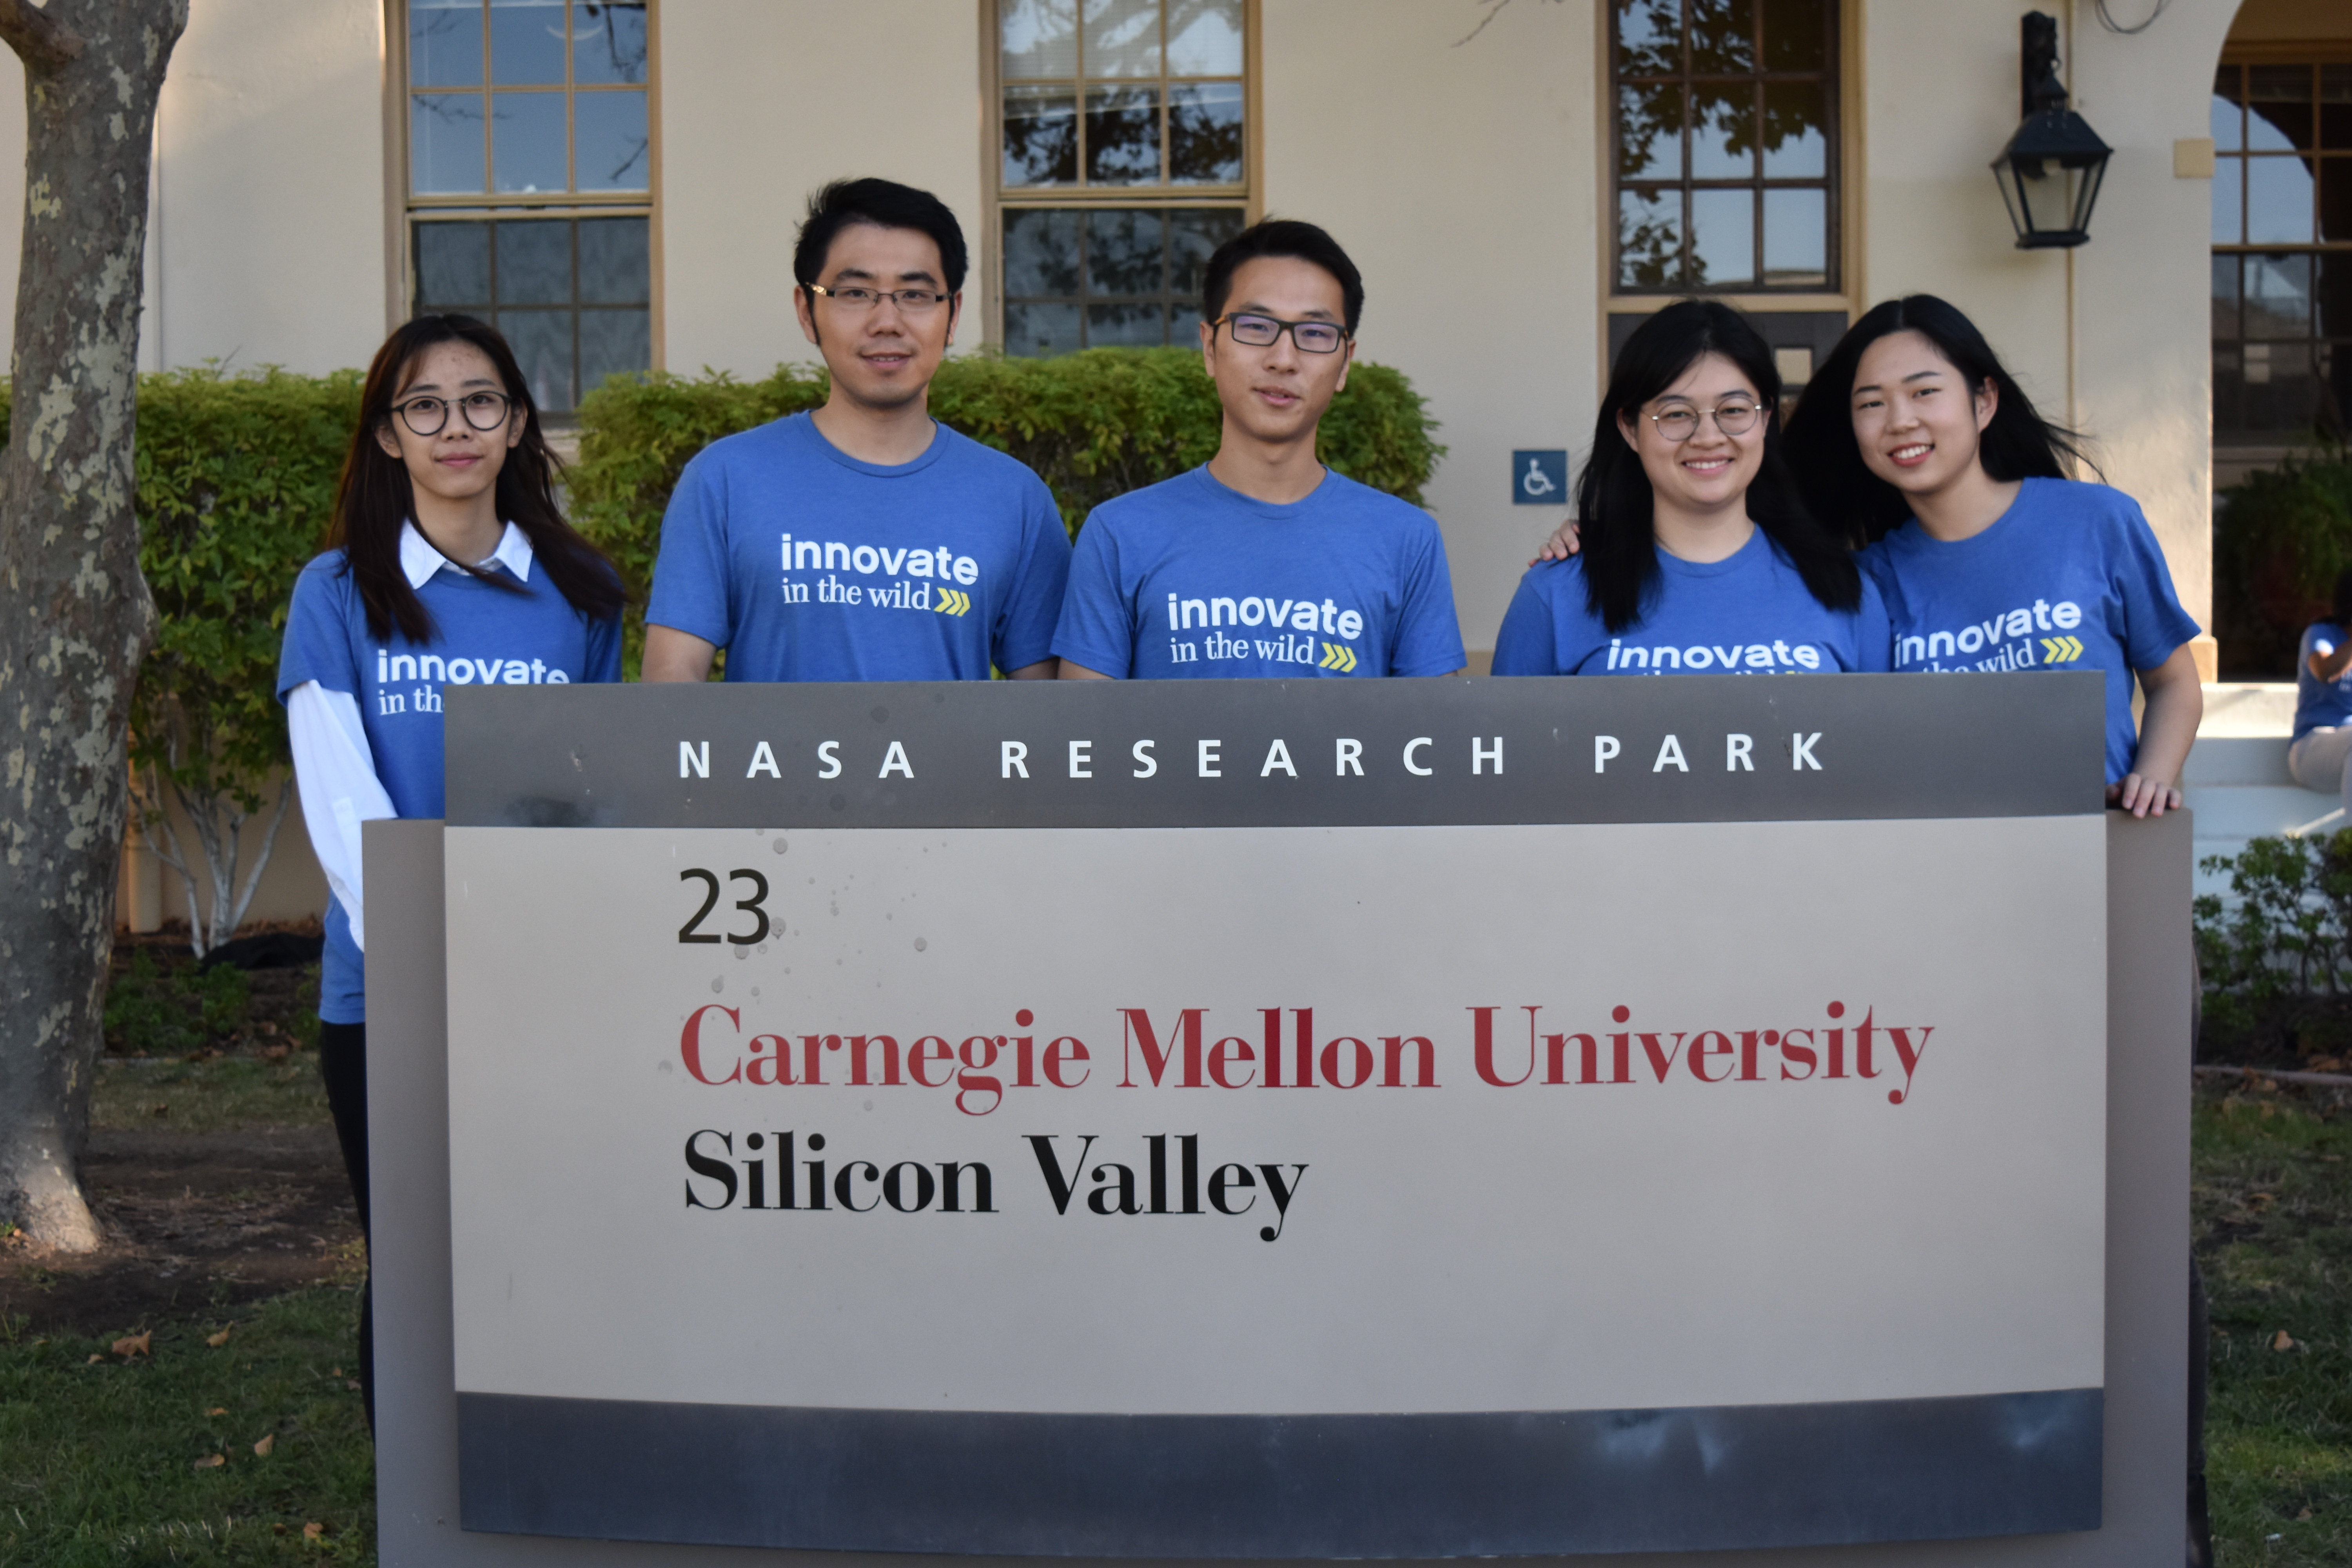 INI Master’s students Mimi Gong, Liangchen Yi, Zhongyi Tong, Zi Liang, and Weizi Liu pose with the NASA Research Park sign at CMU-SV